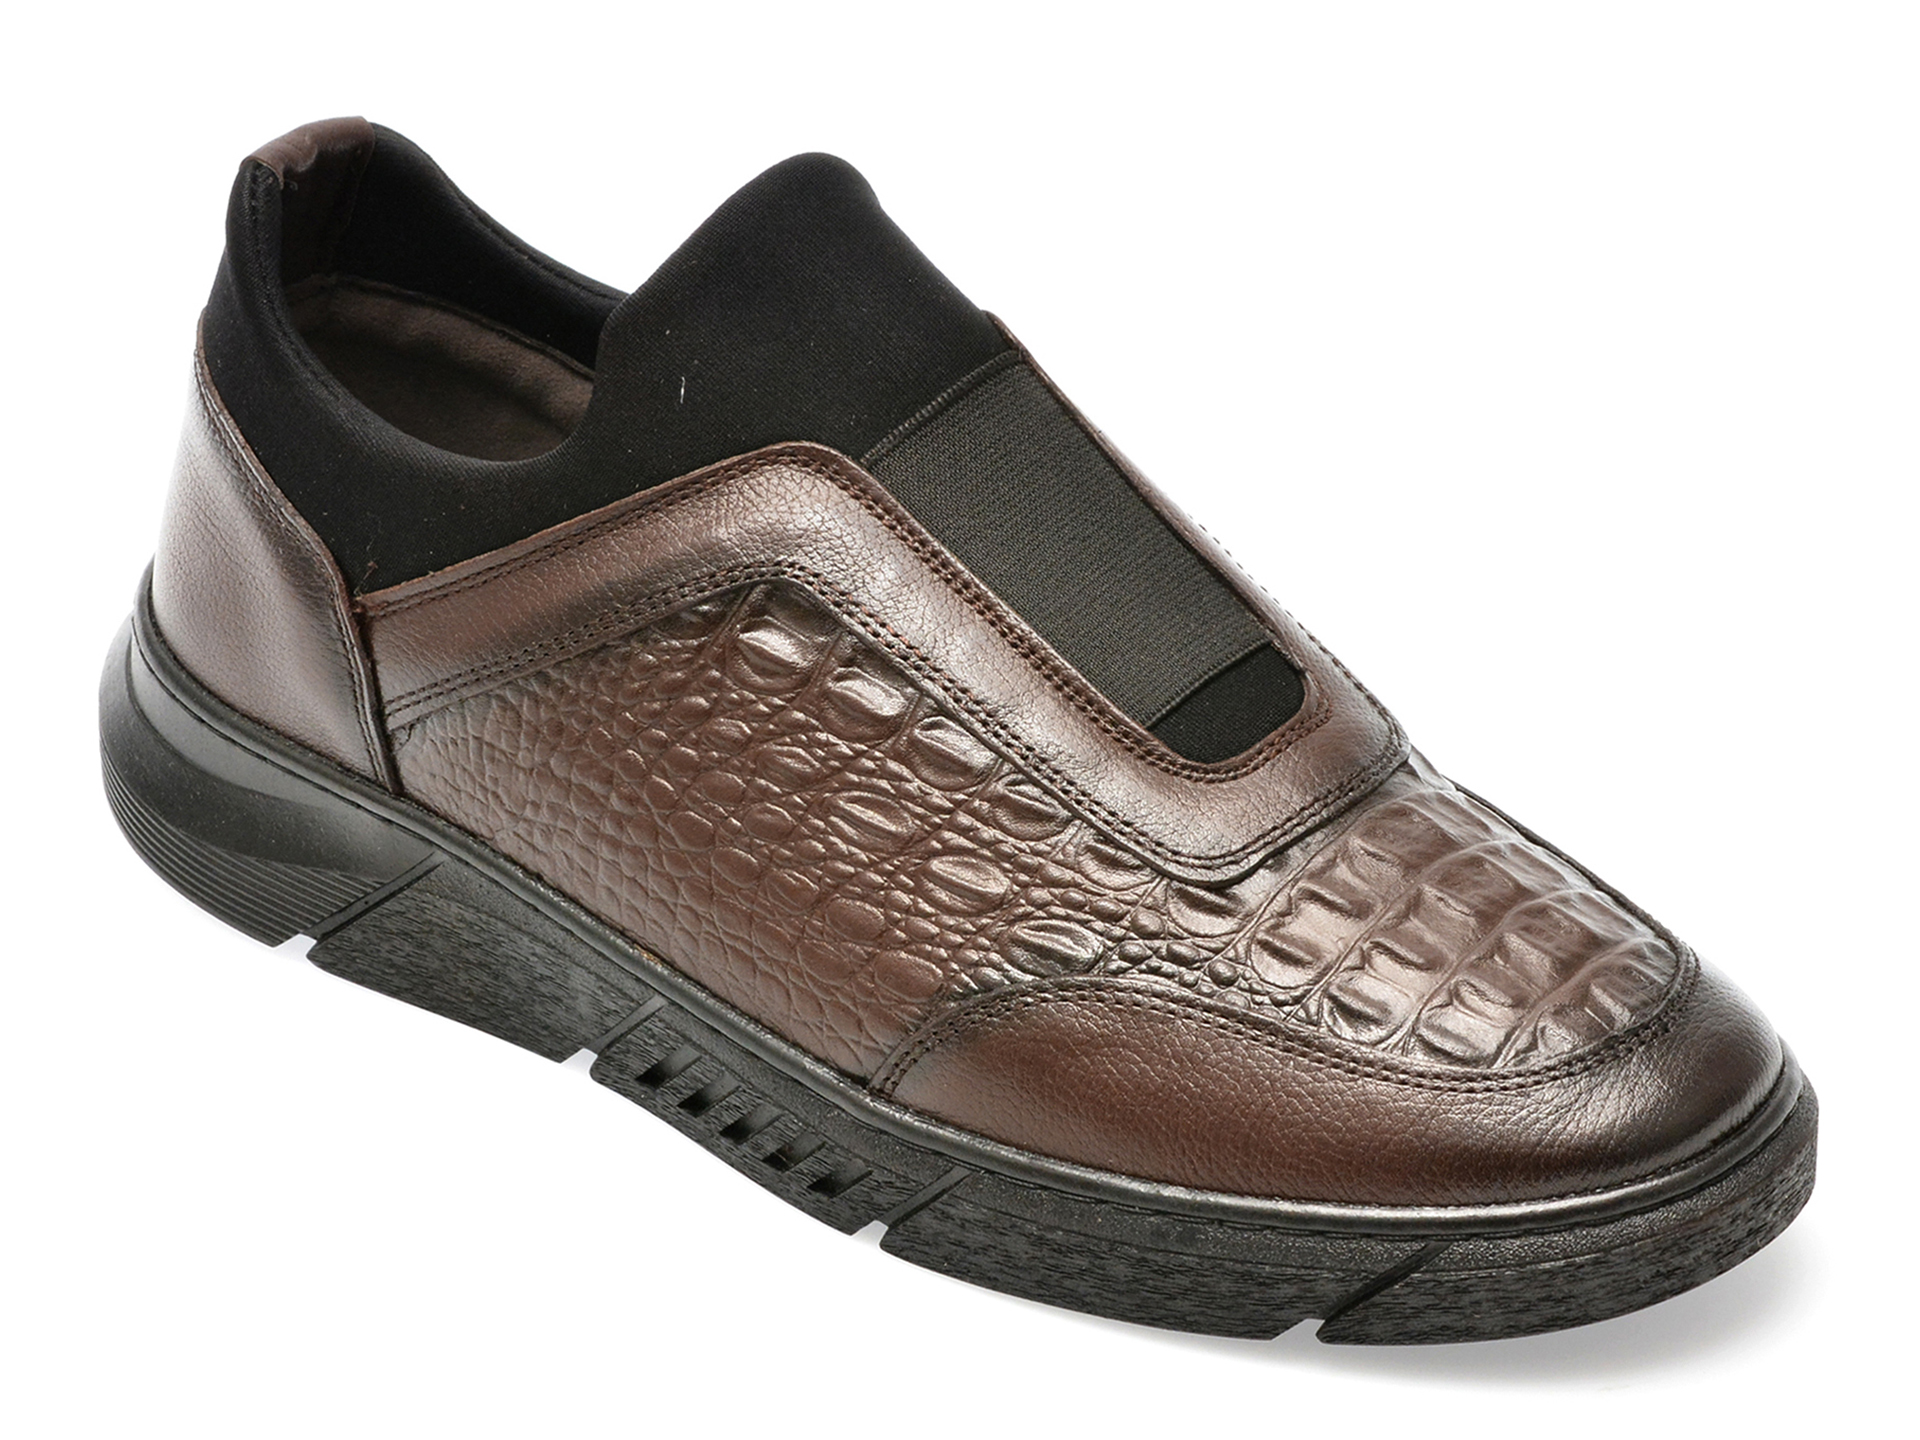 Pantofi AXXELLL maro, ER800, din piele naturala